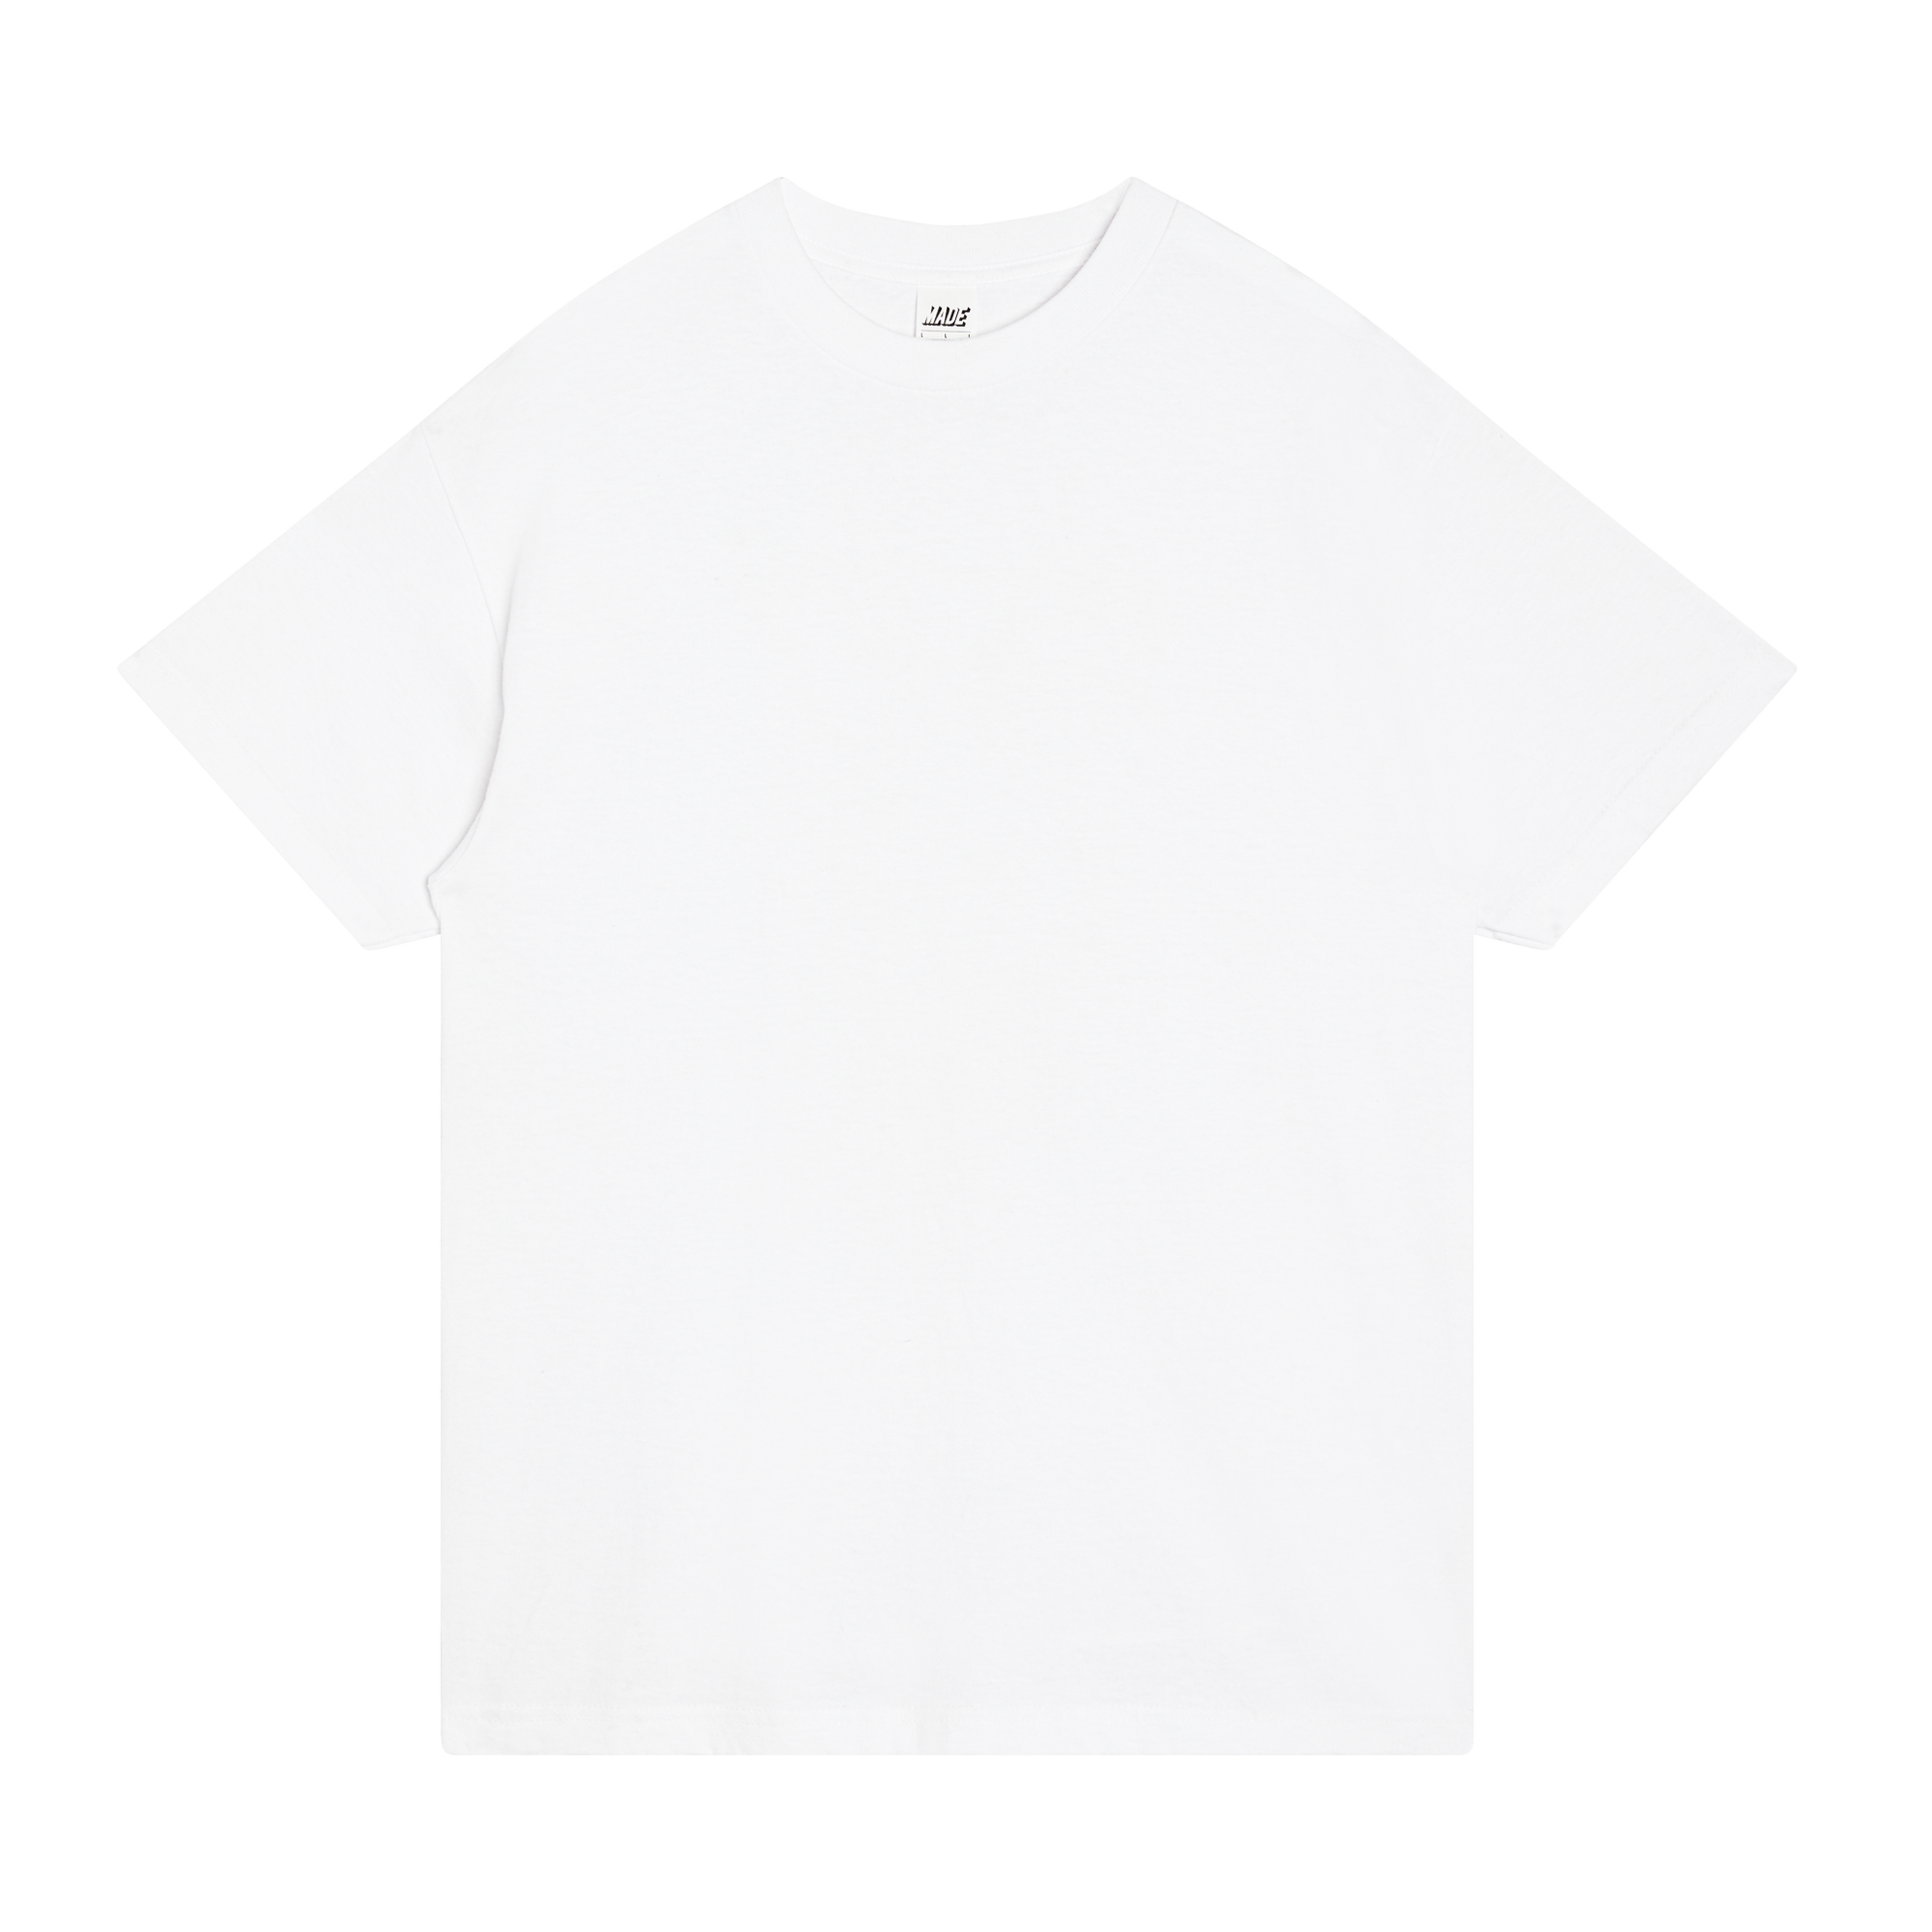 Test Blank Tshirts